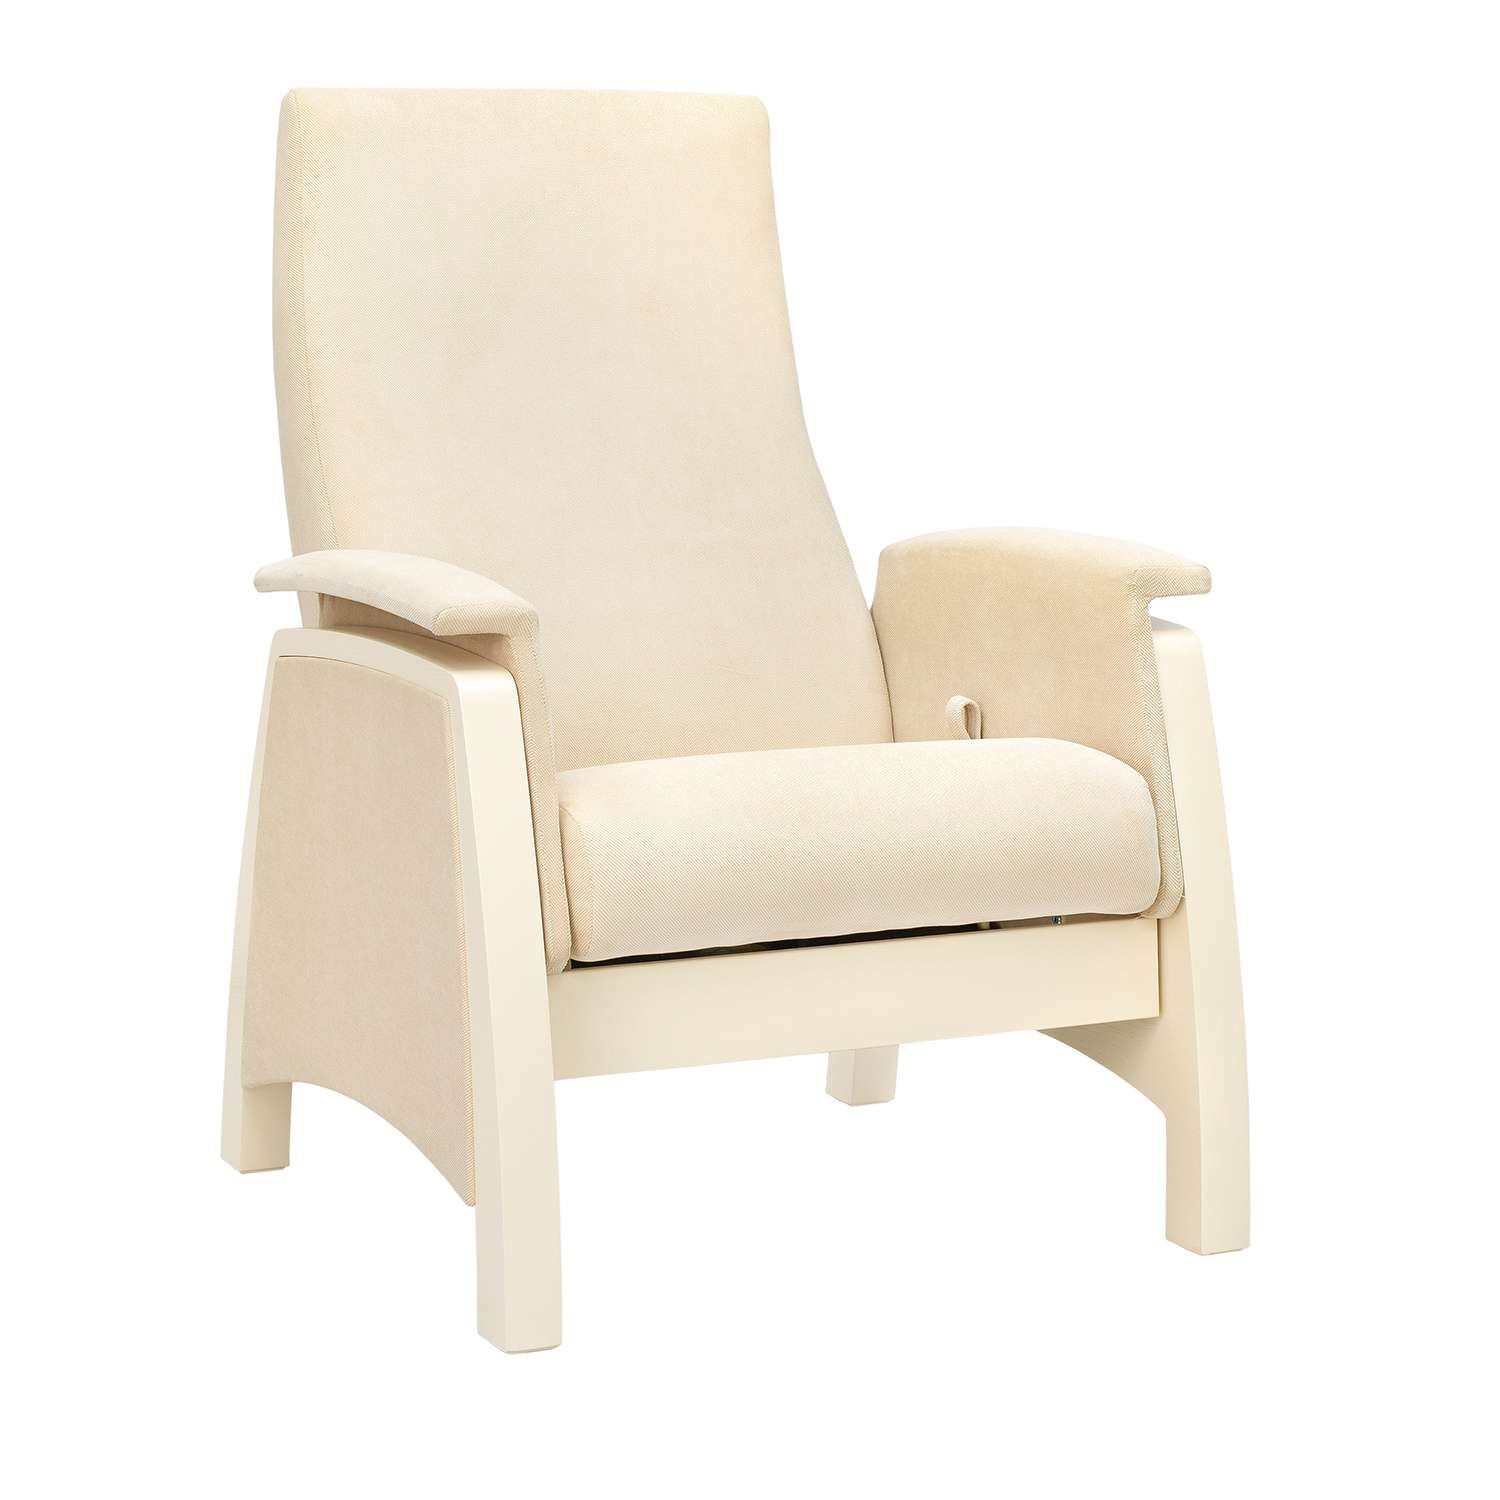 Кресло для кормления Milli Sky Дуб шампань / ткань Verona Vanilla - фото 2